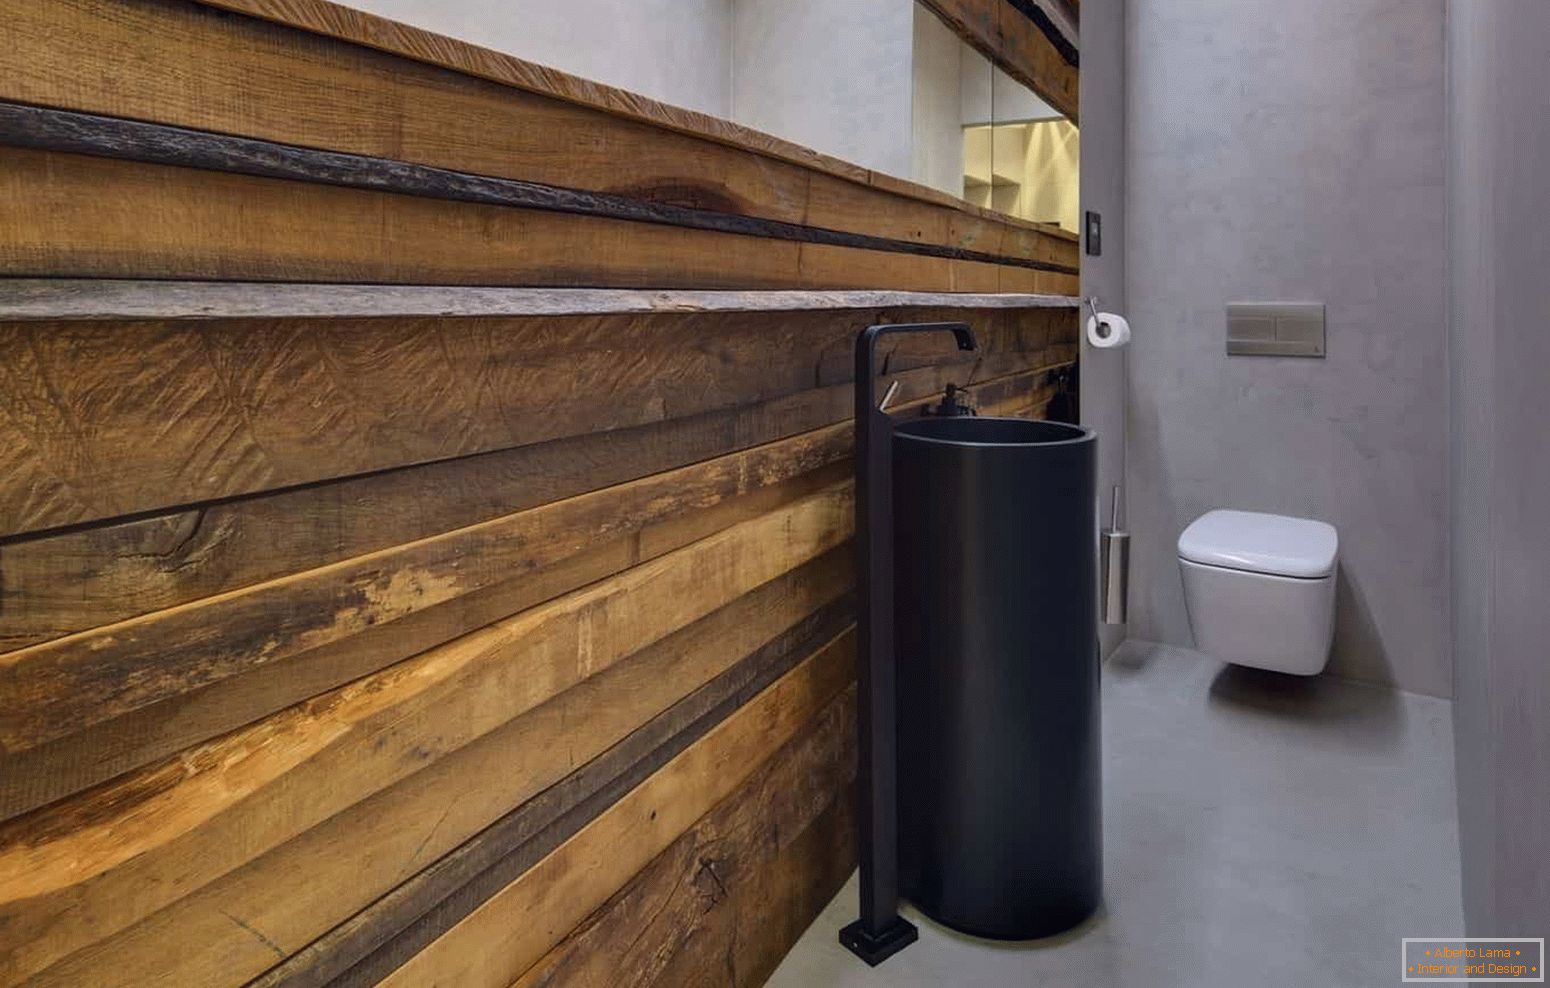 Modernes Design einer kleinen Toilette im Öko-Stil mit einer ungewöhnlichen Schale